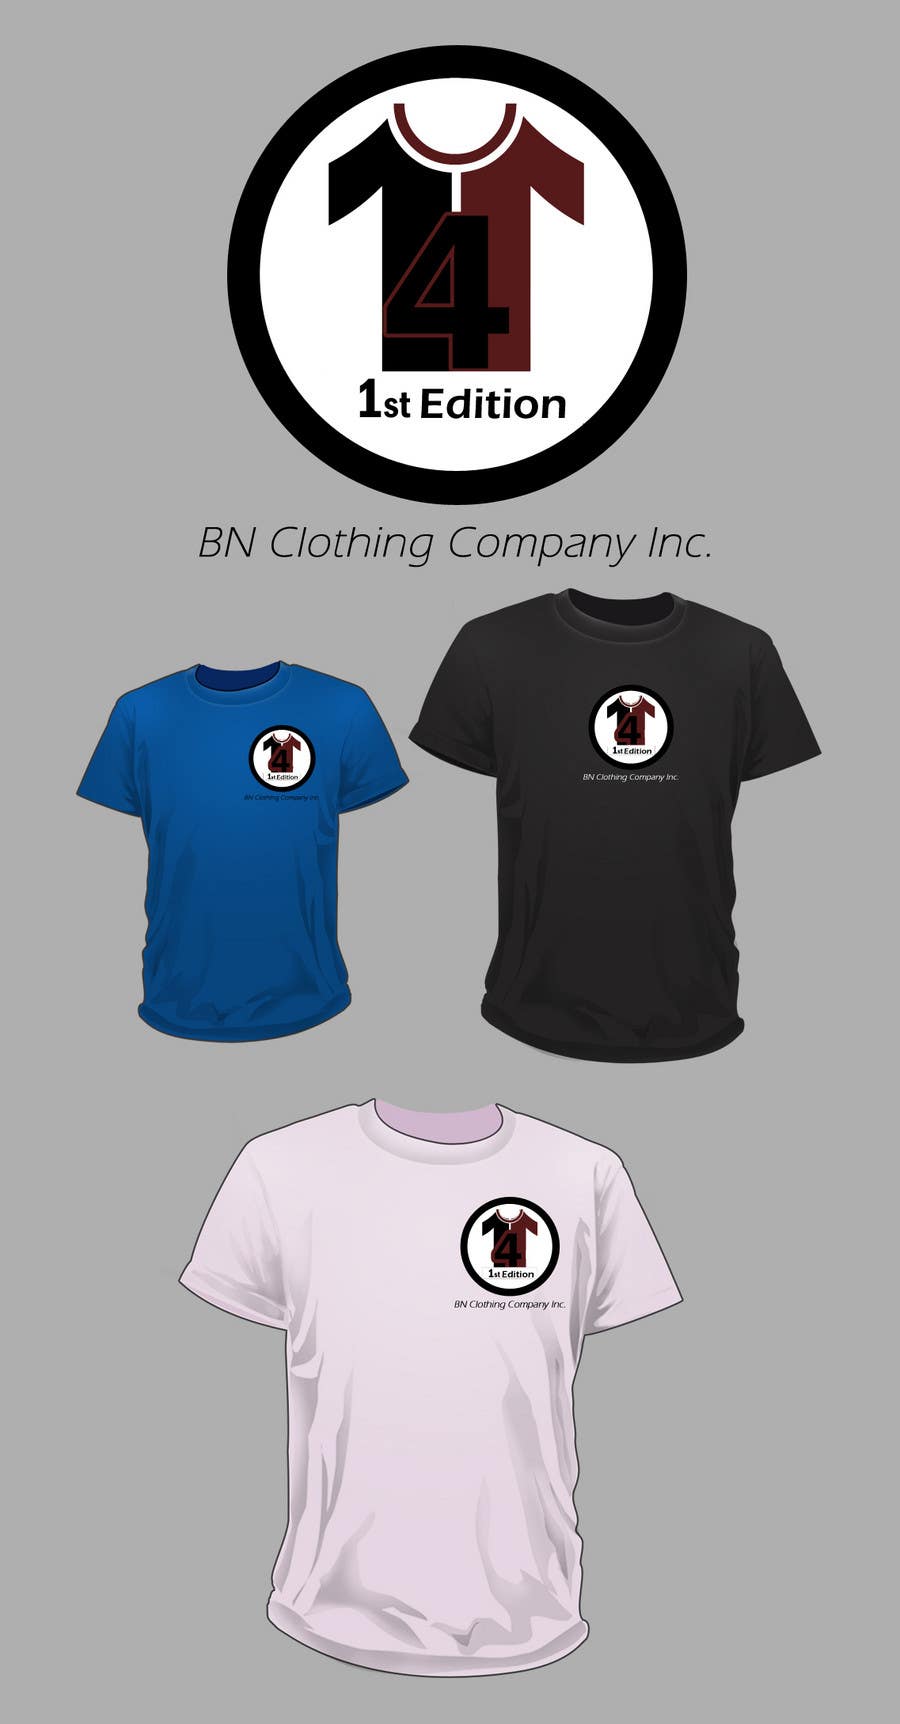 Příspěvek č. 136 do soutěže                                                 T-shirt Design for The BN Clothing Company Inc.
                                            